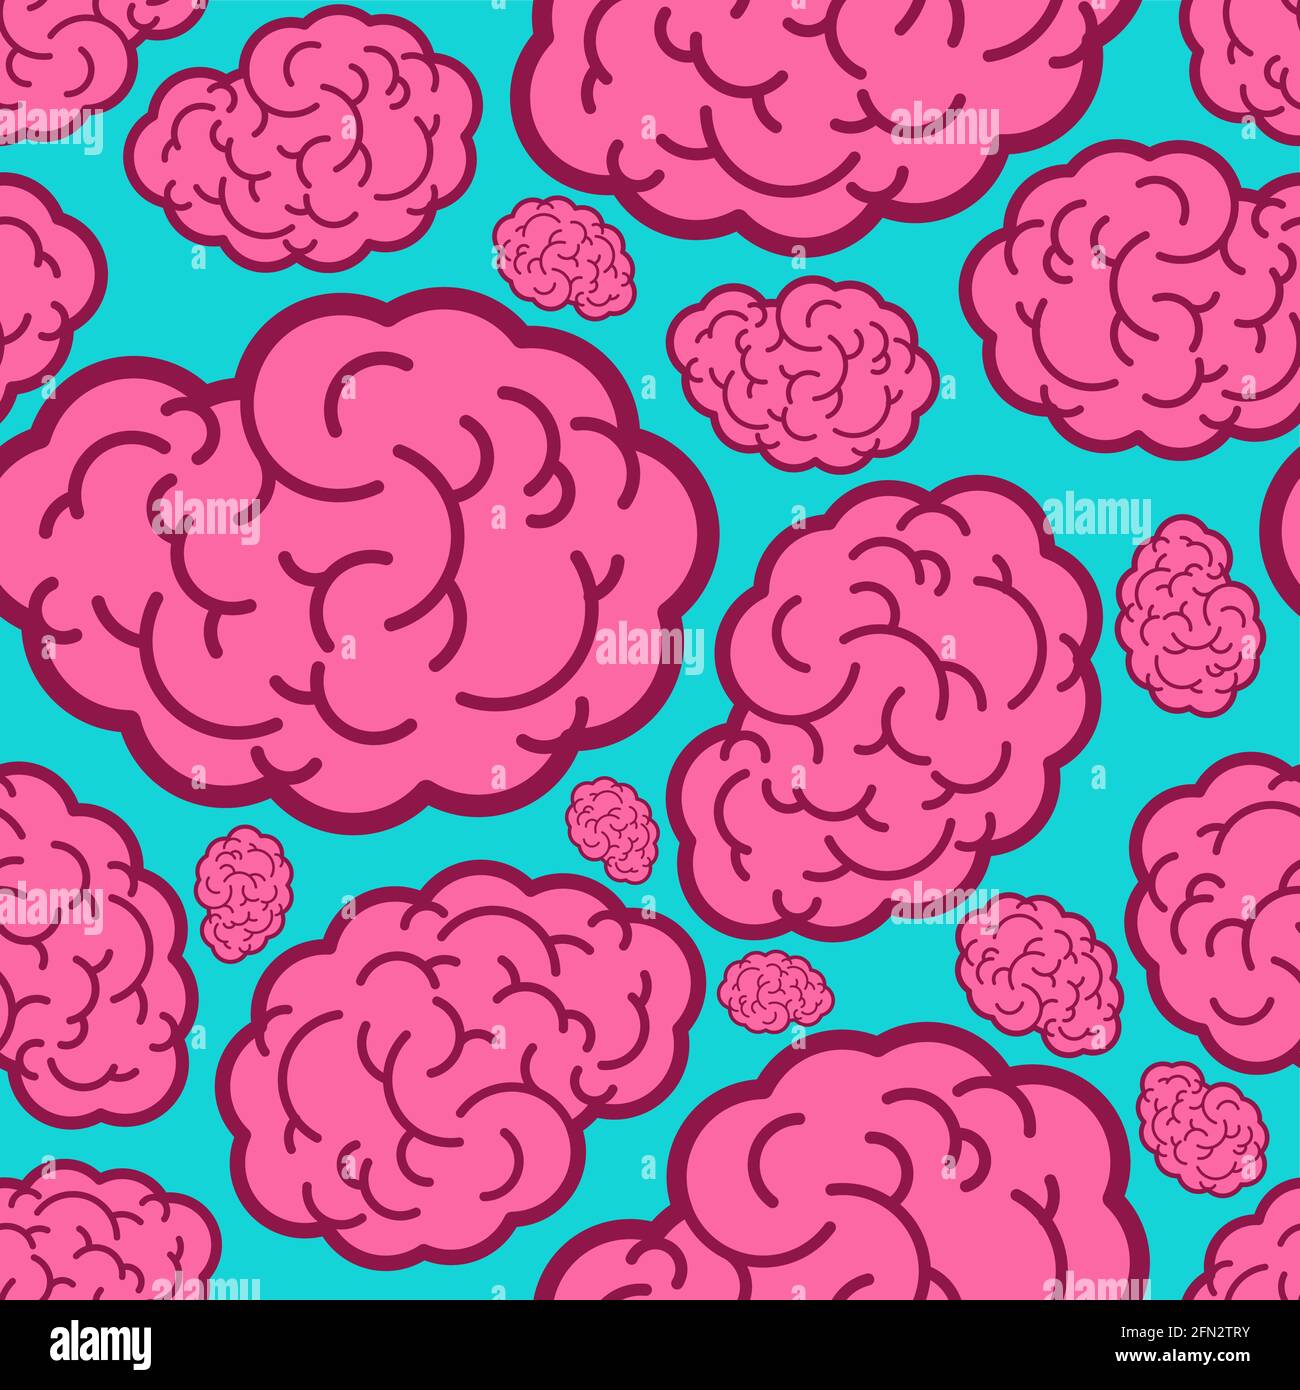 brain pattern wallpaper